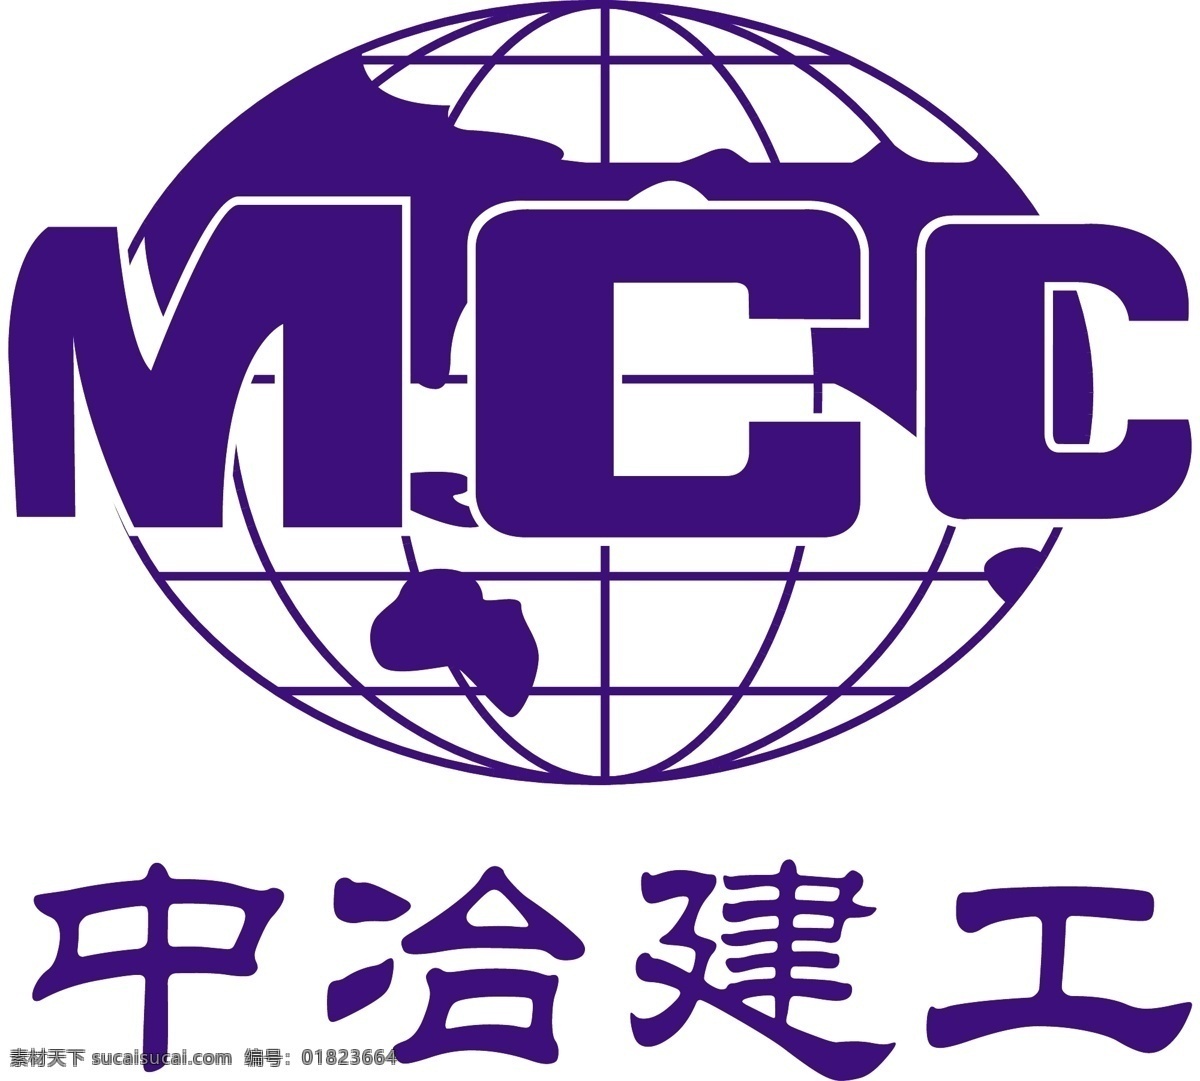 中冶建工 中冶 建工 标志 mcc 标识标志图标 企业 logo 矢量图库